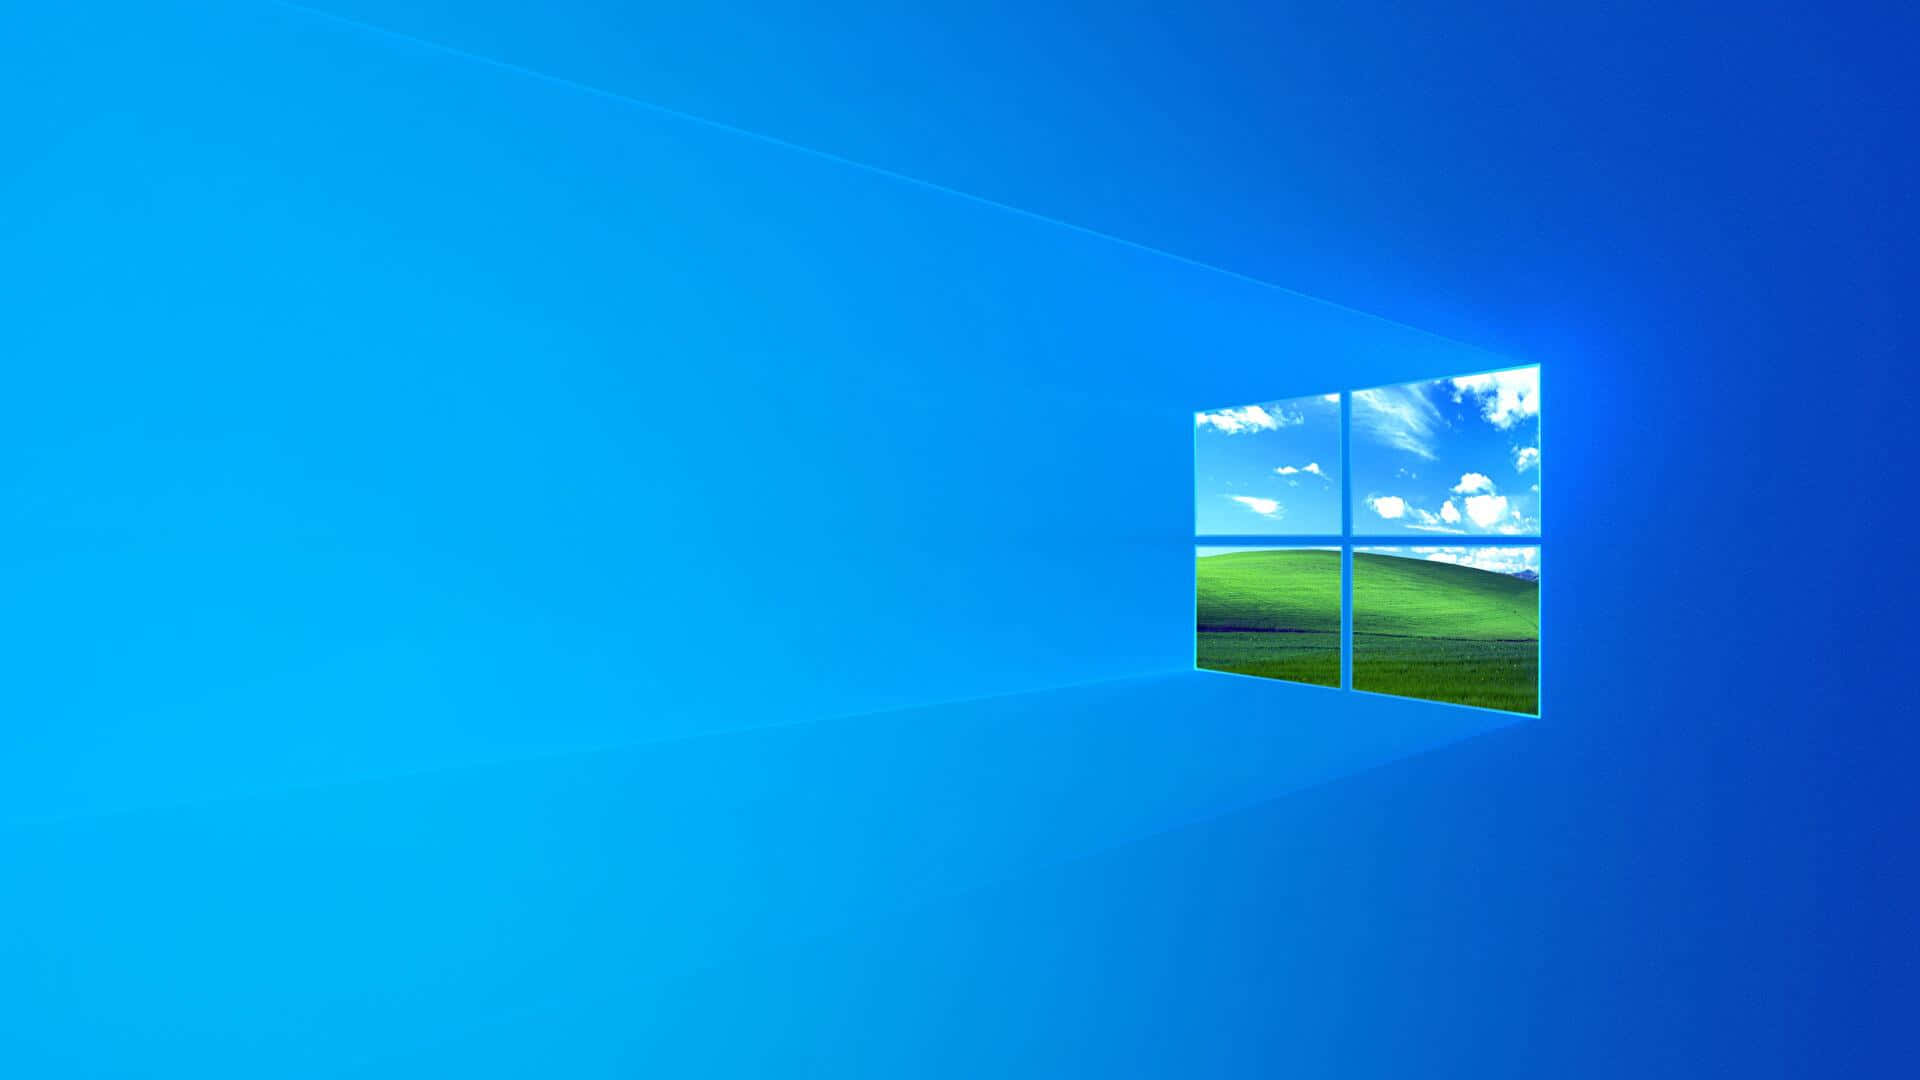 Imagenhorizontes Azules Con El Logotipo De Windows.